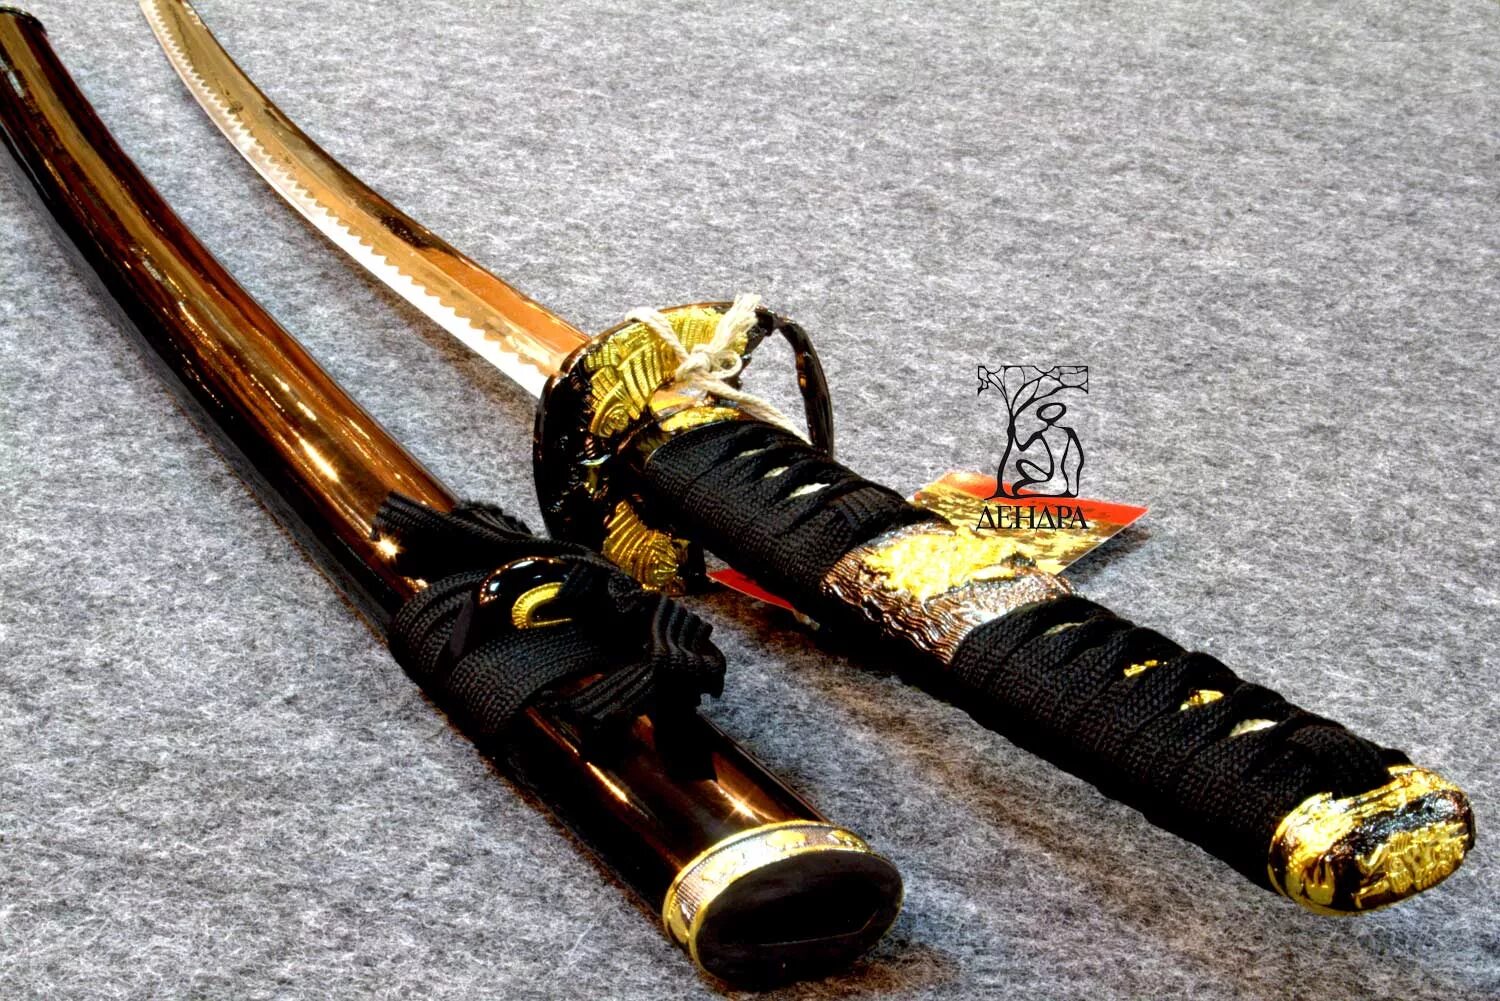 Сильные мечи. Японская катана. Японский меч катана. Японская катана арт. Катана самурая.